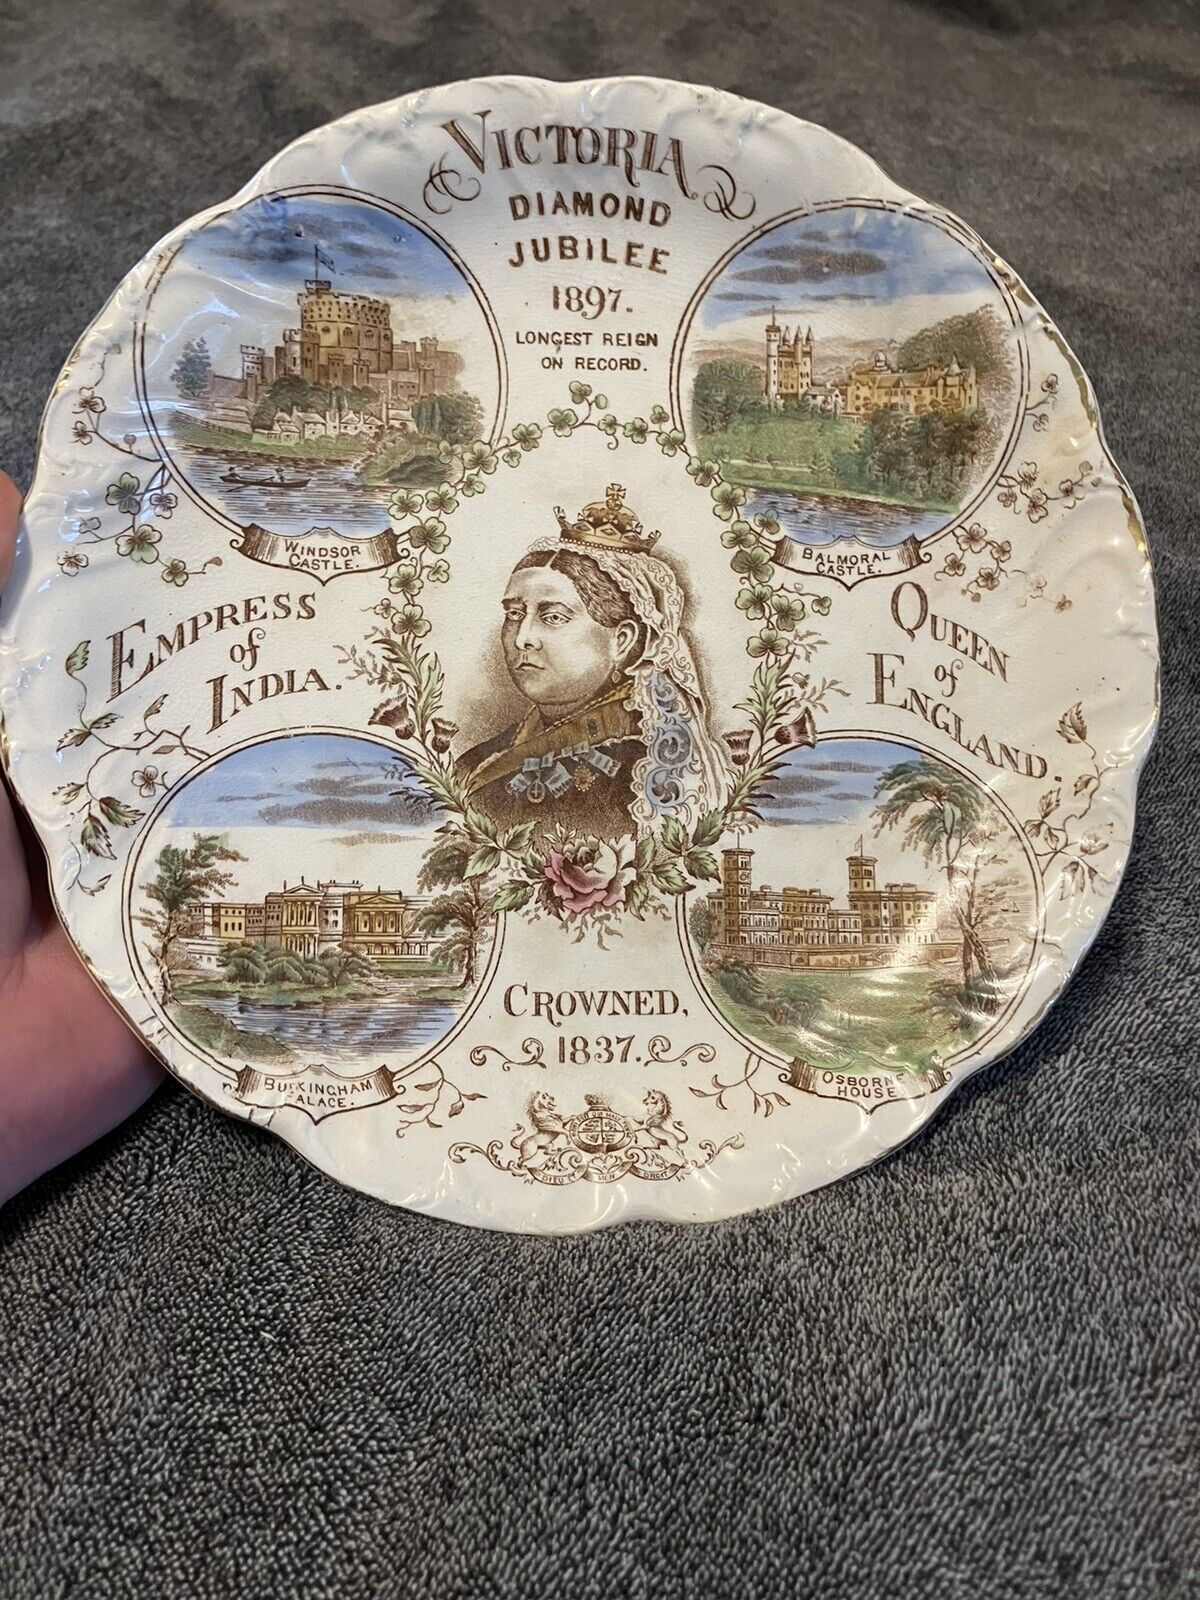 Queen Victoria Diamond Jubilee commemorative plate 1897, English monarchy 